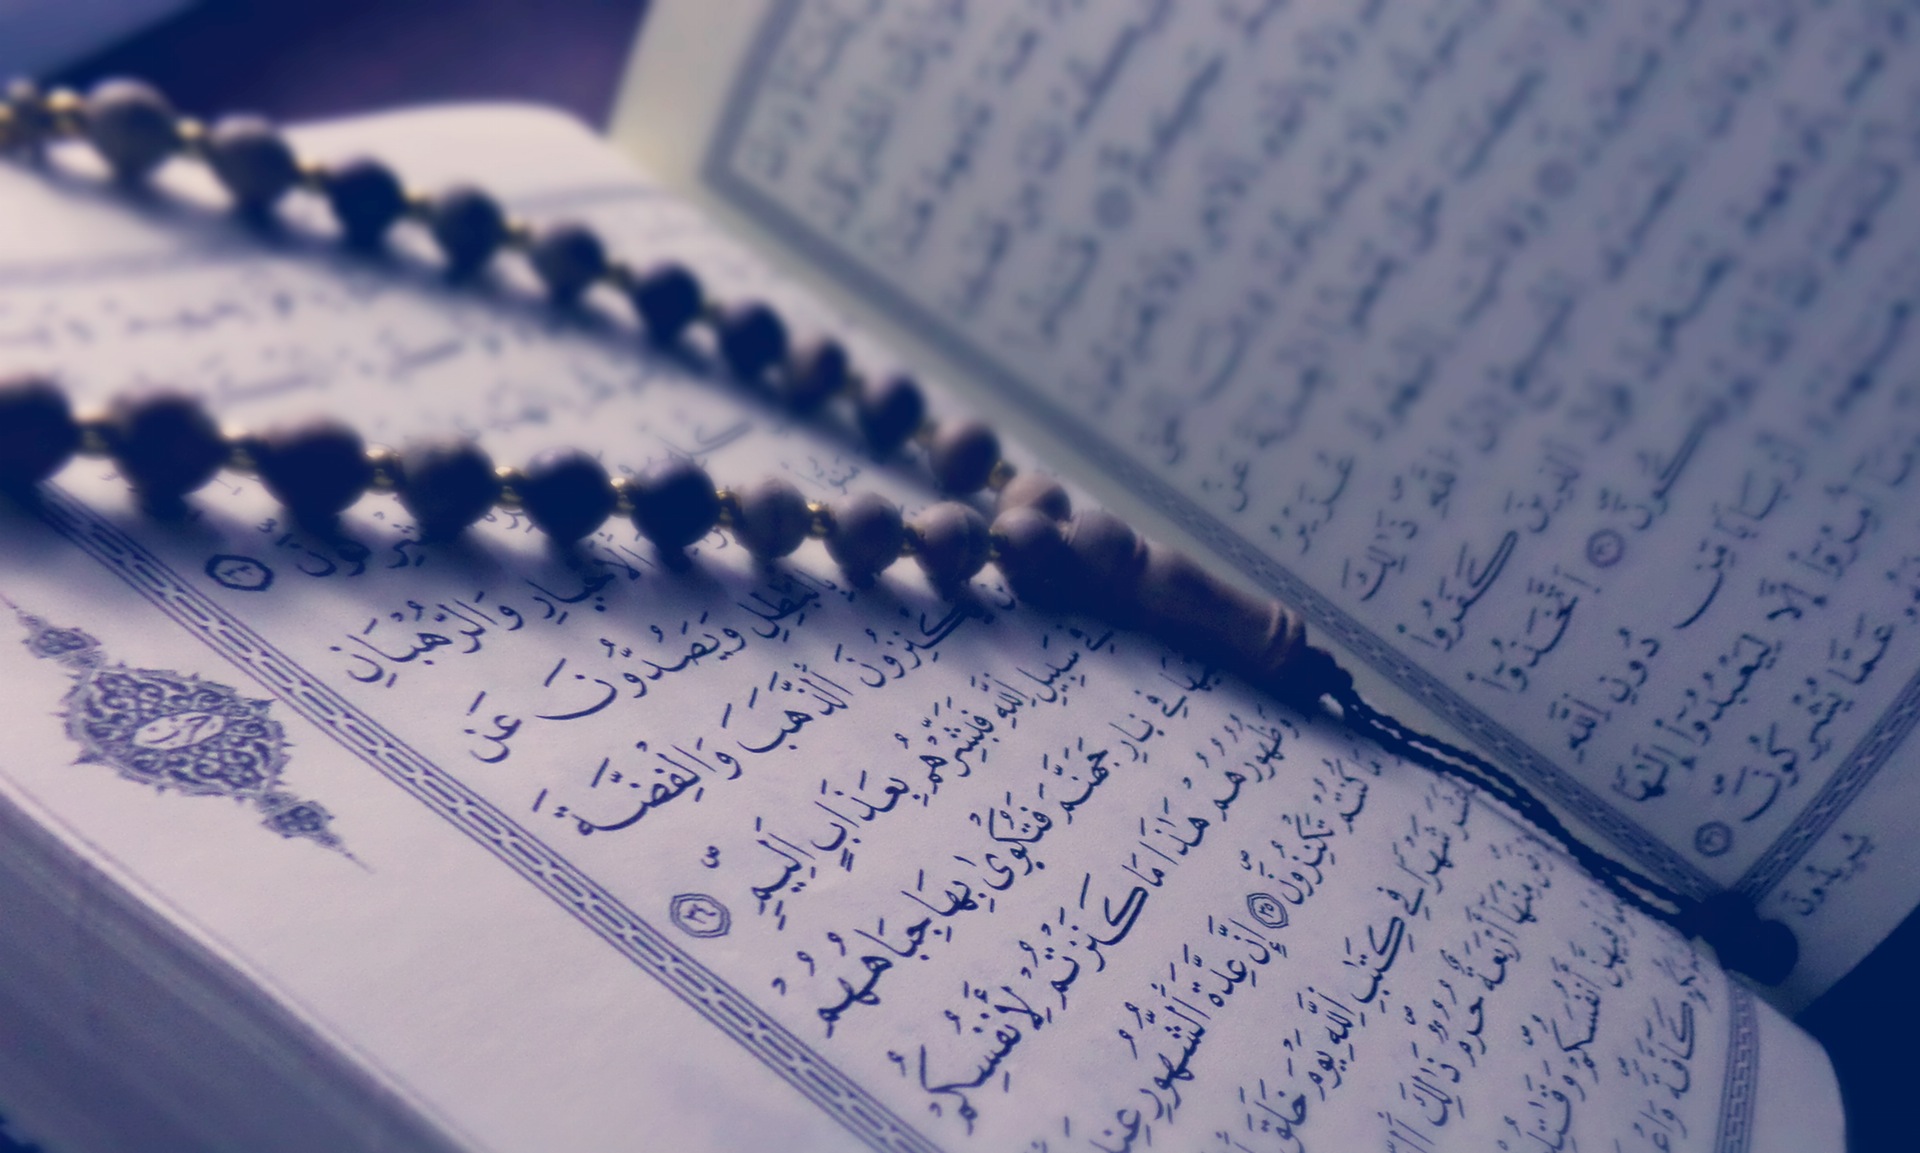 ❤️بیست نوع قلبی که به آنها قرآن اشاره کرده❤️